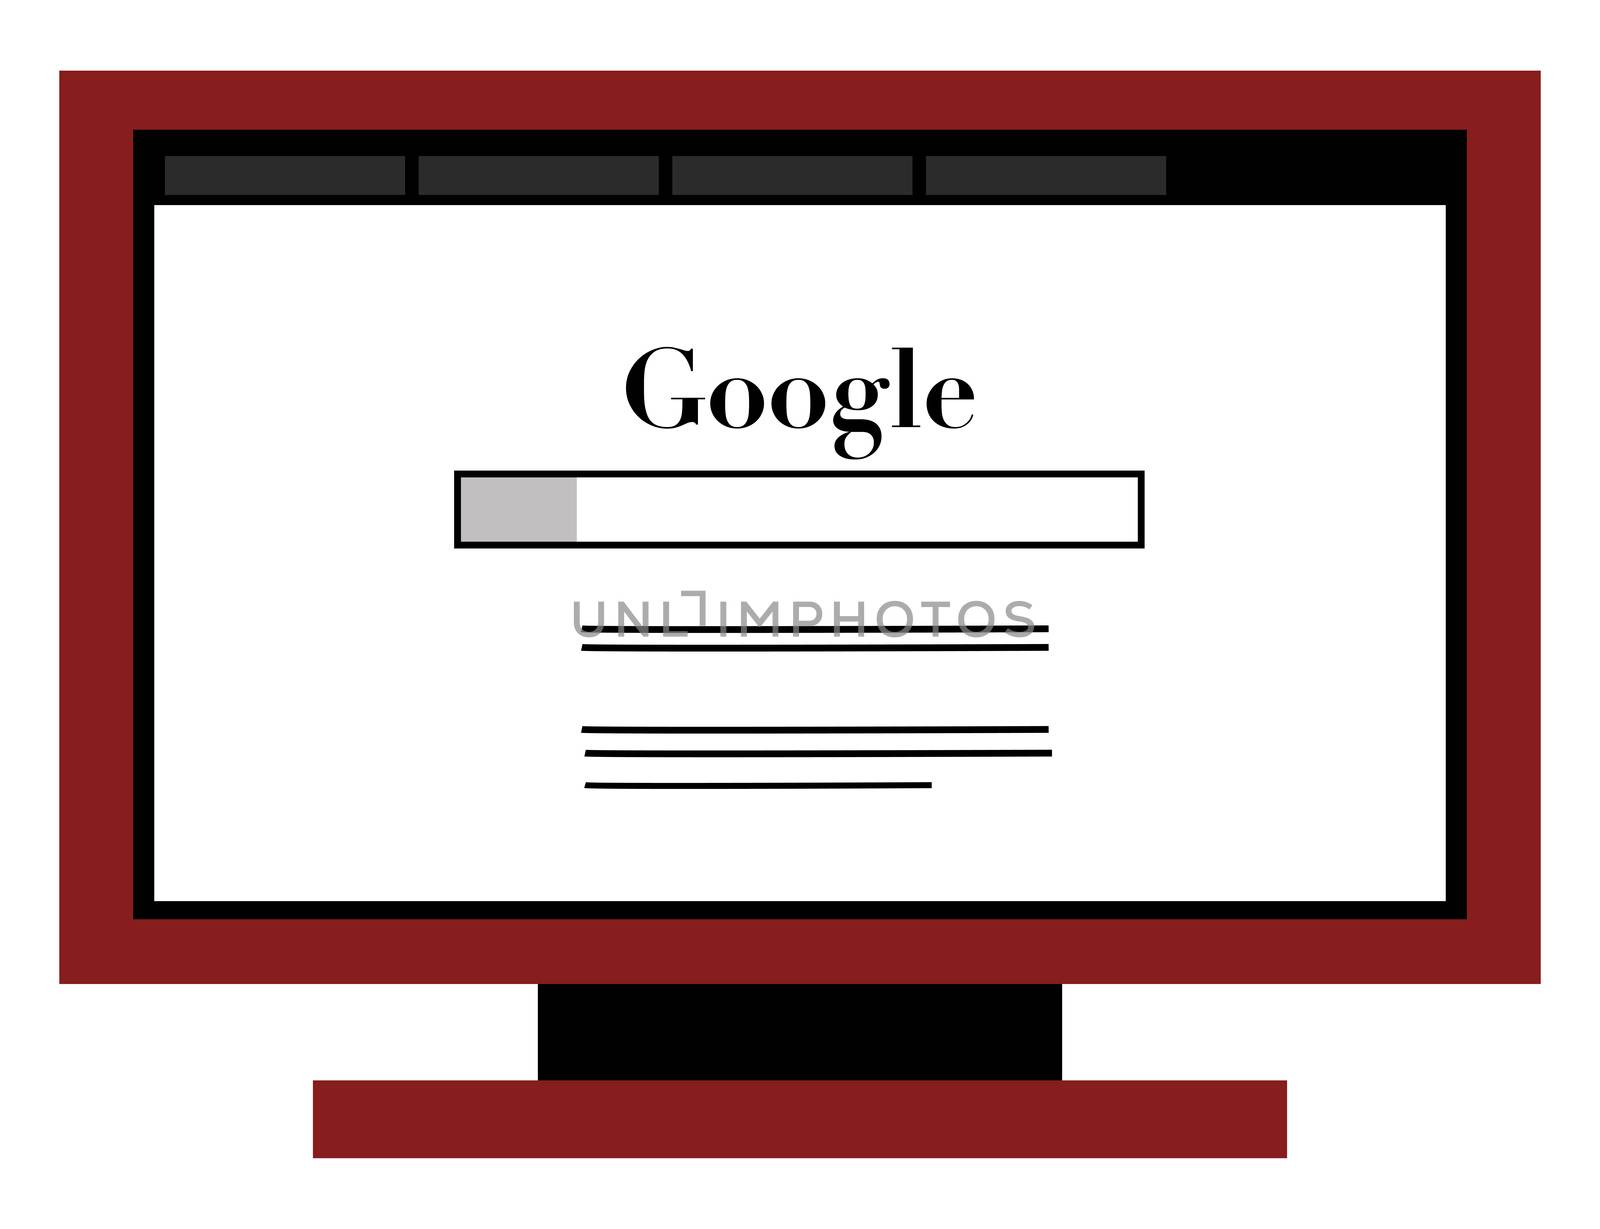 Google internet site, illustration, vector on white background by Morphart